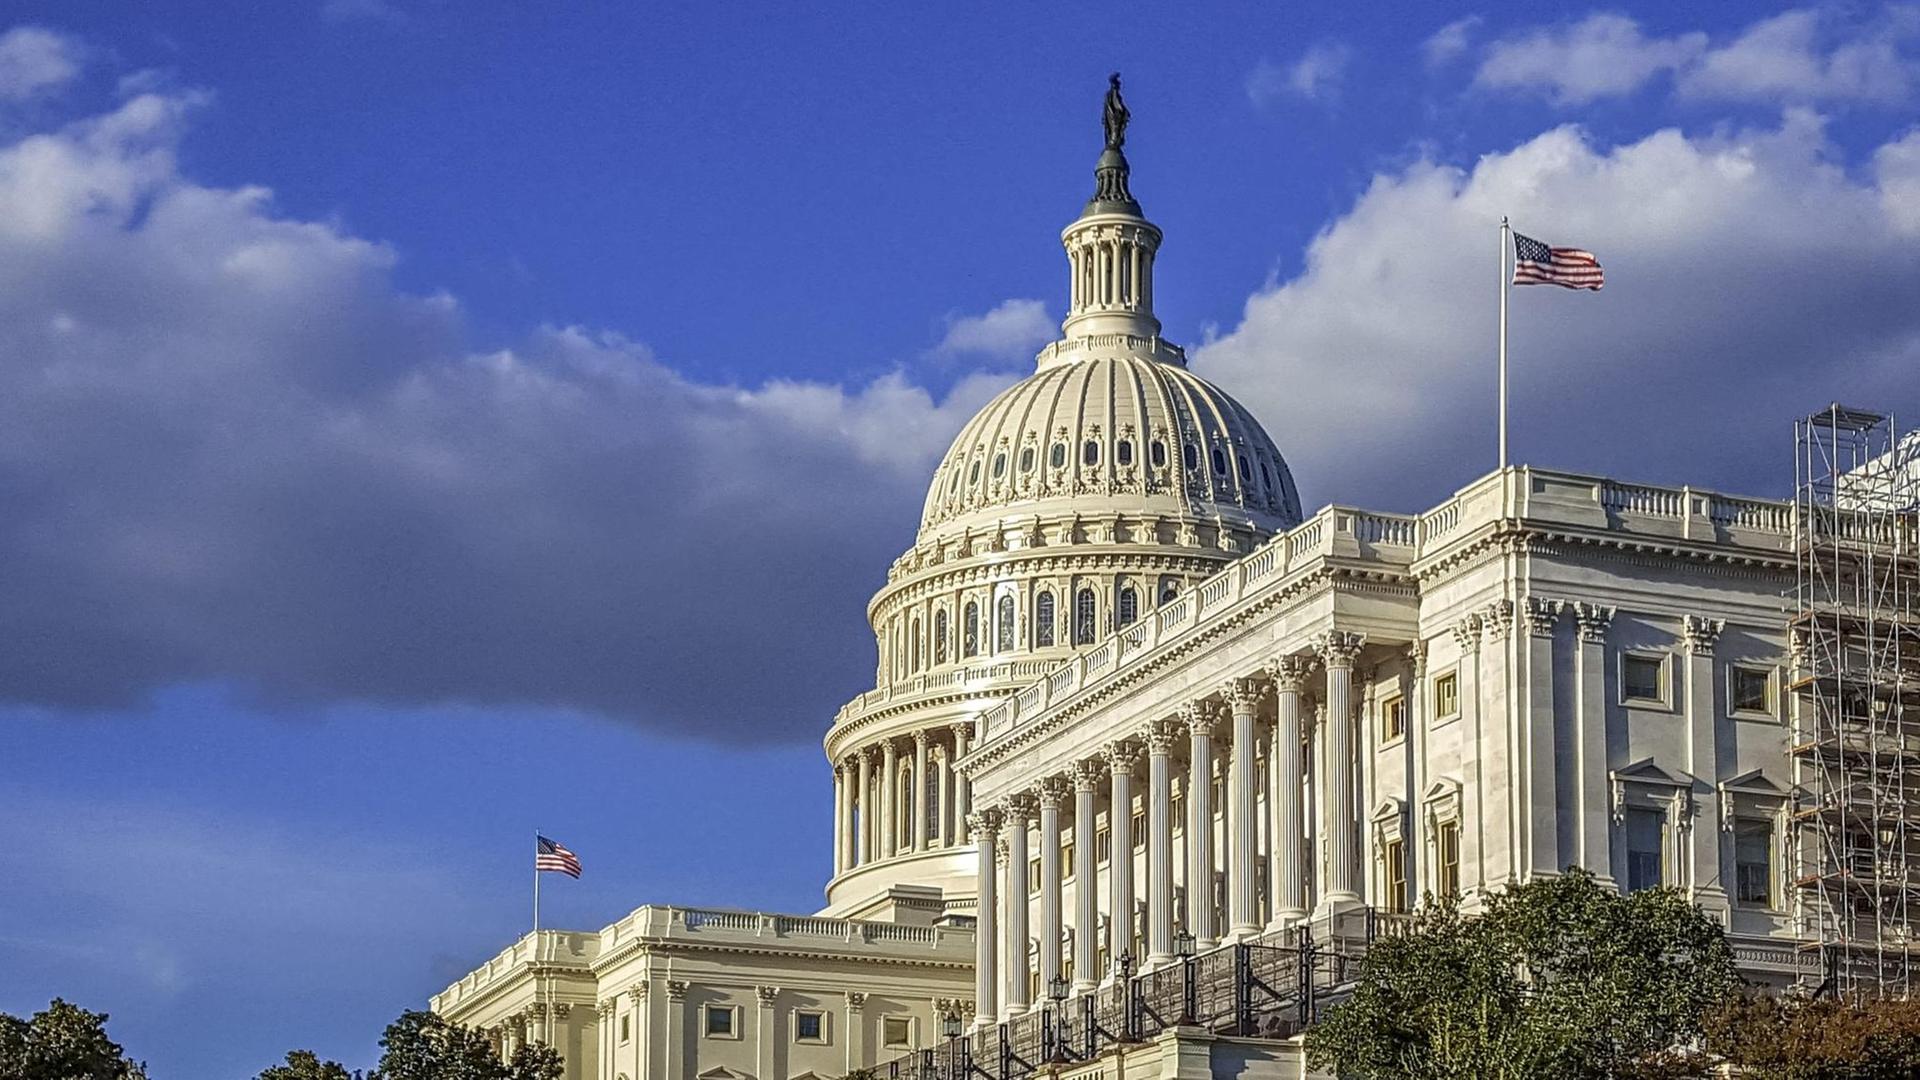 Blick auf das Kapitol in Washington. Das Kapitol ist der Sitz des US-Kongresses (Parlament) mit seinen beiden Kammern. Das Repräsentantenhaus ist im Südflügel (im Bild re.) untergebracht, der Senat im Nordflügel.